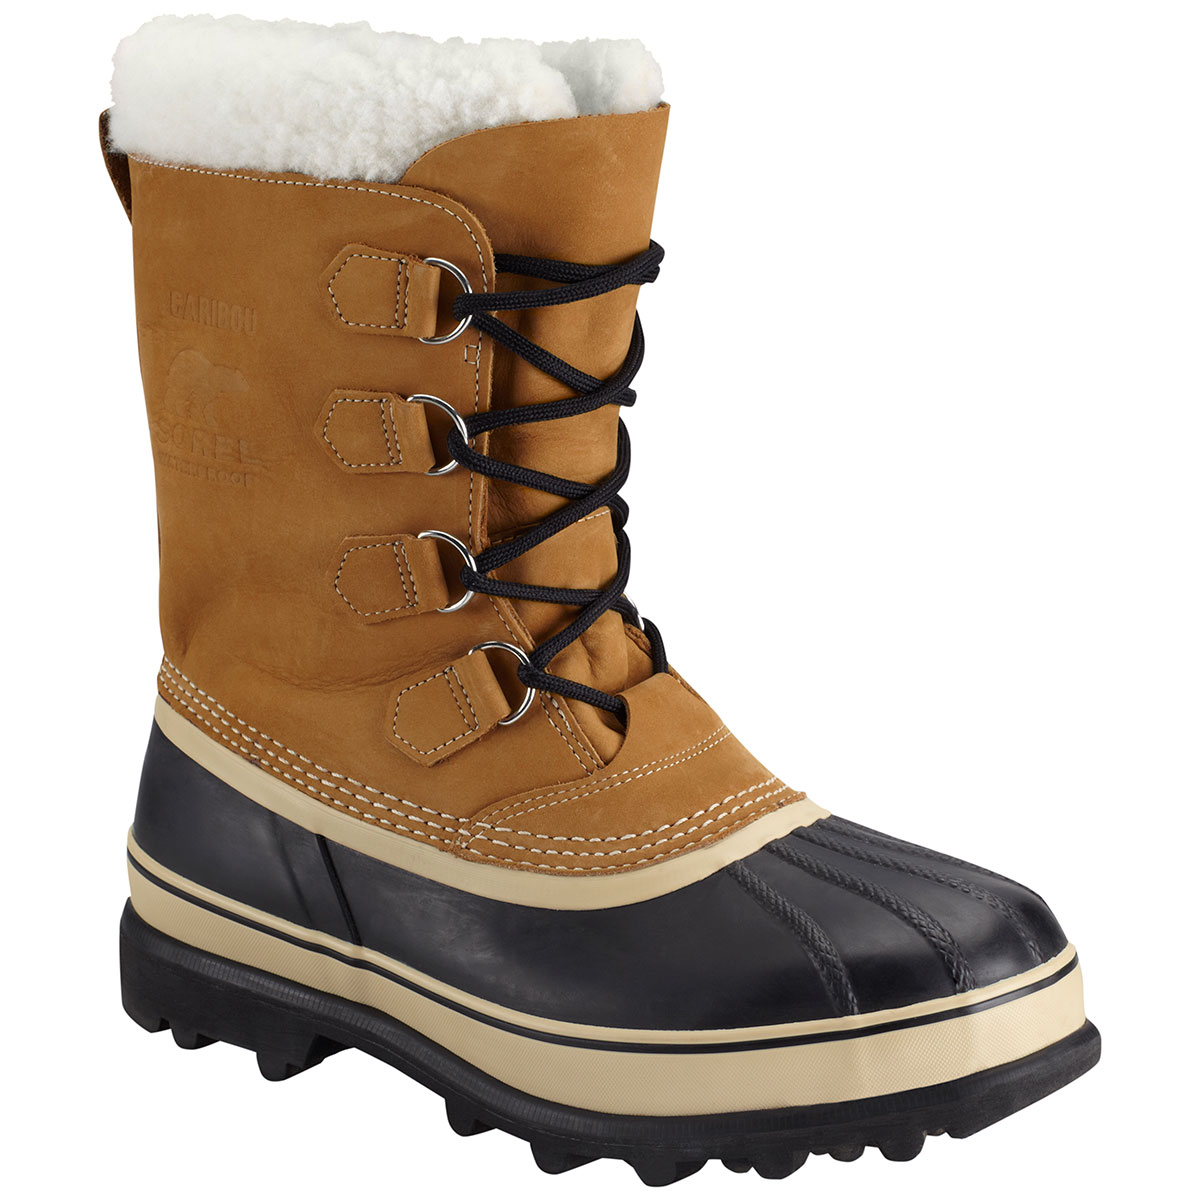 sorel men's snow boots